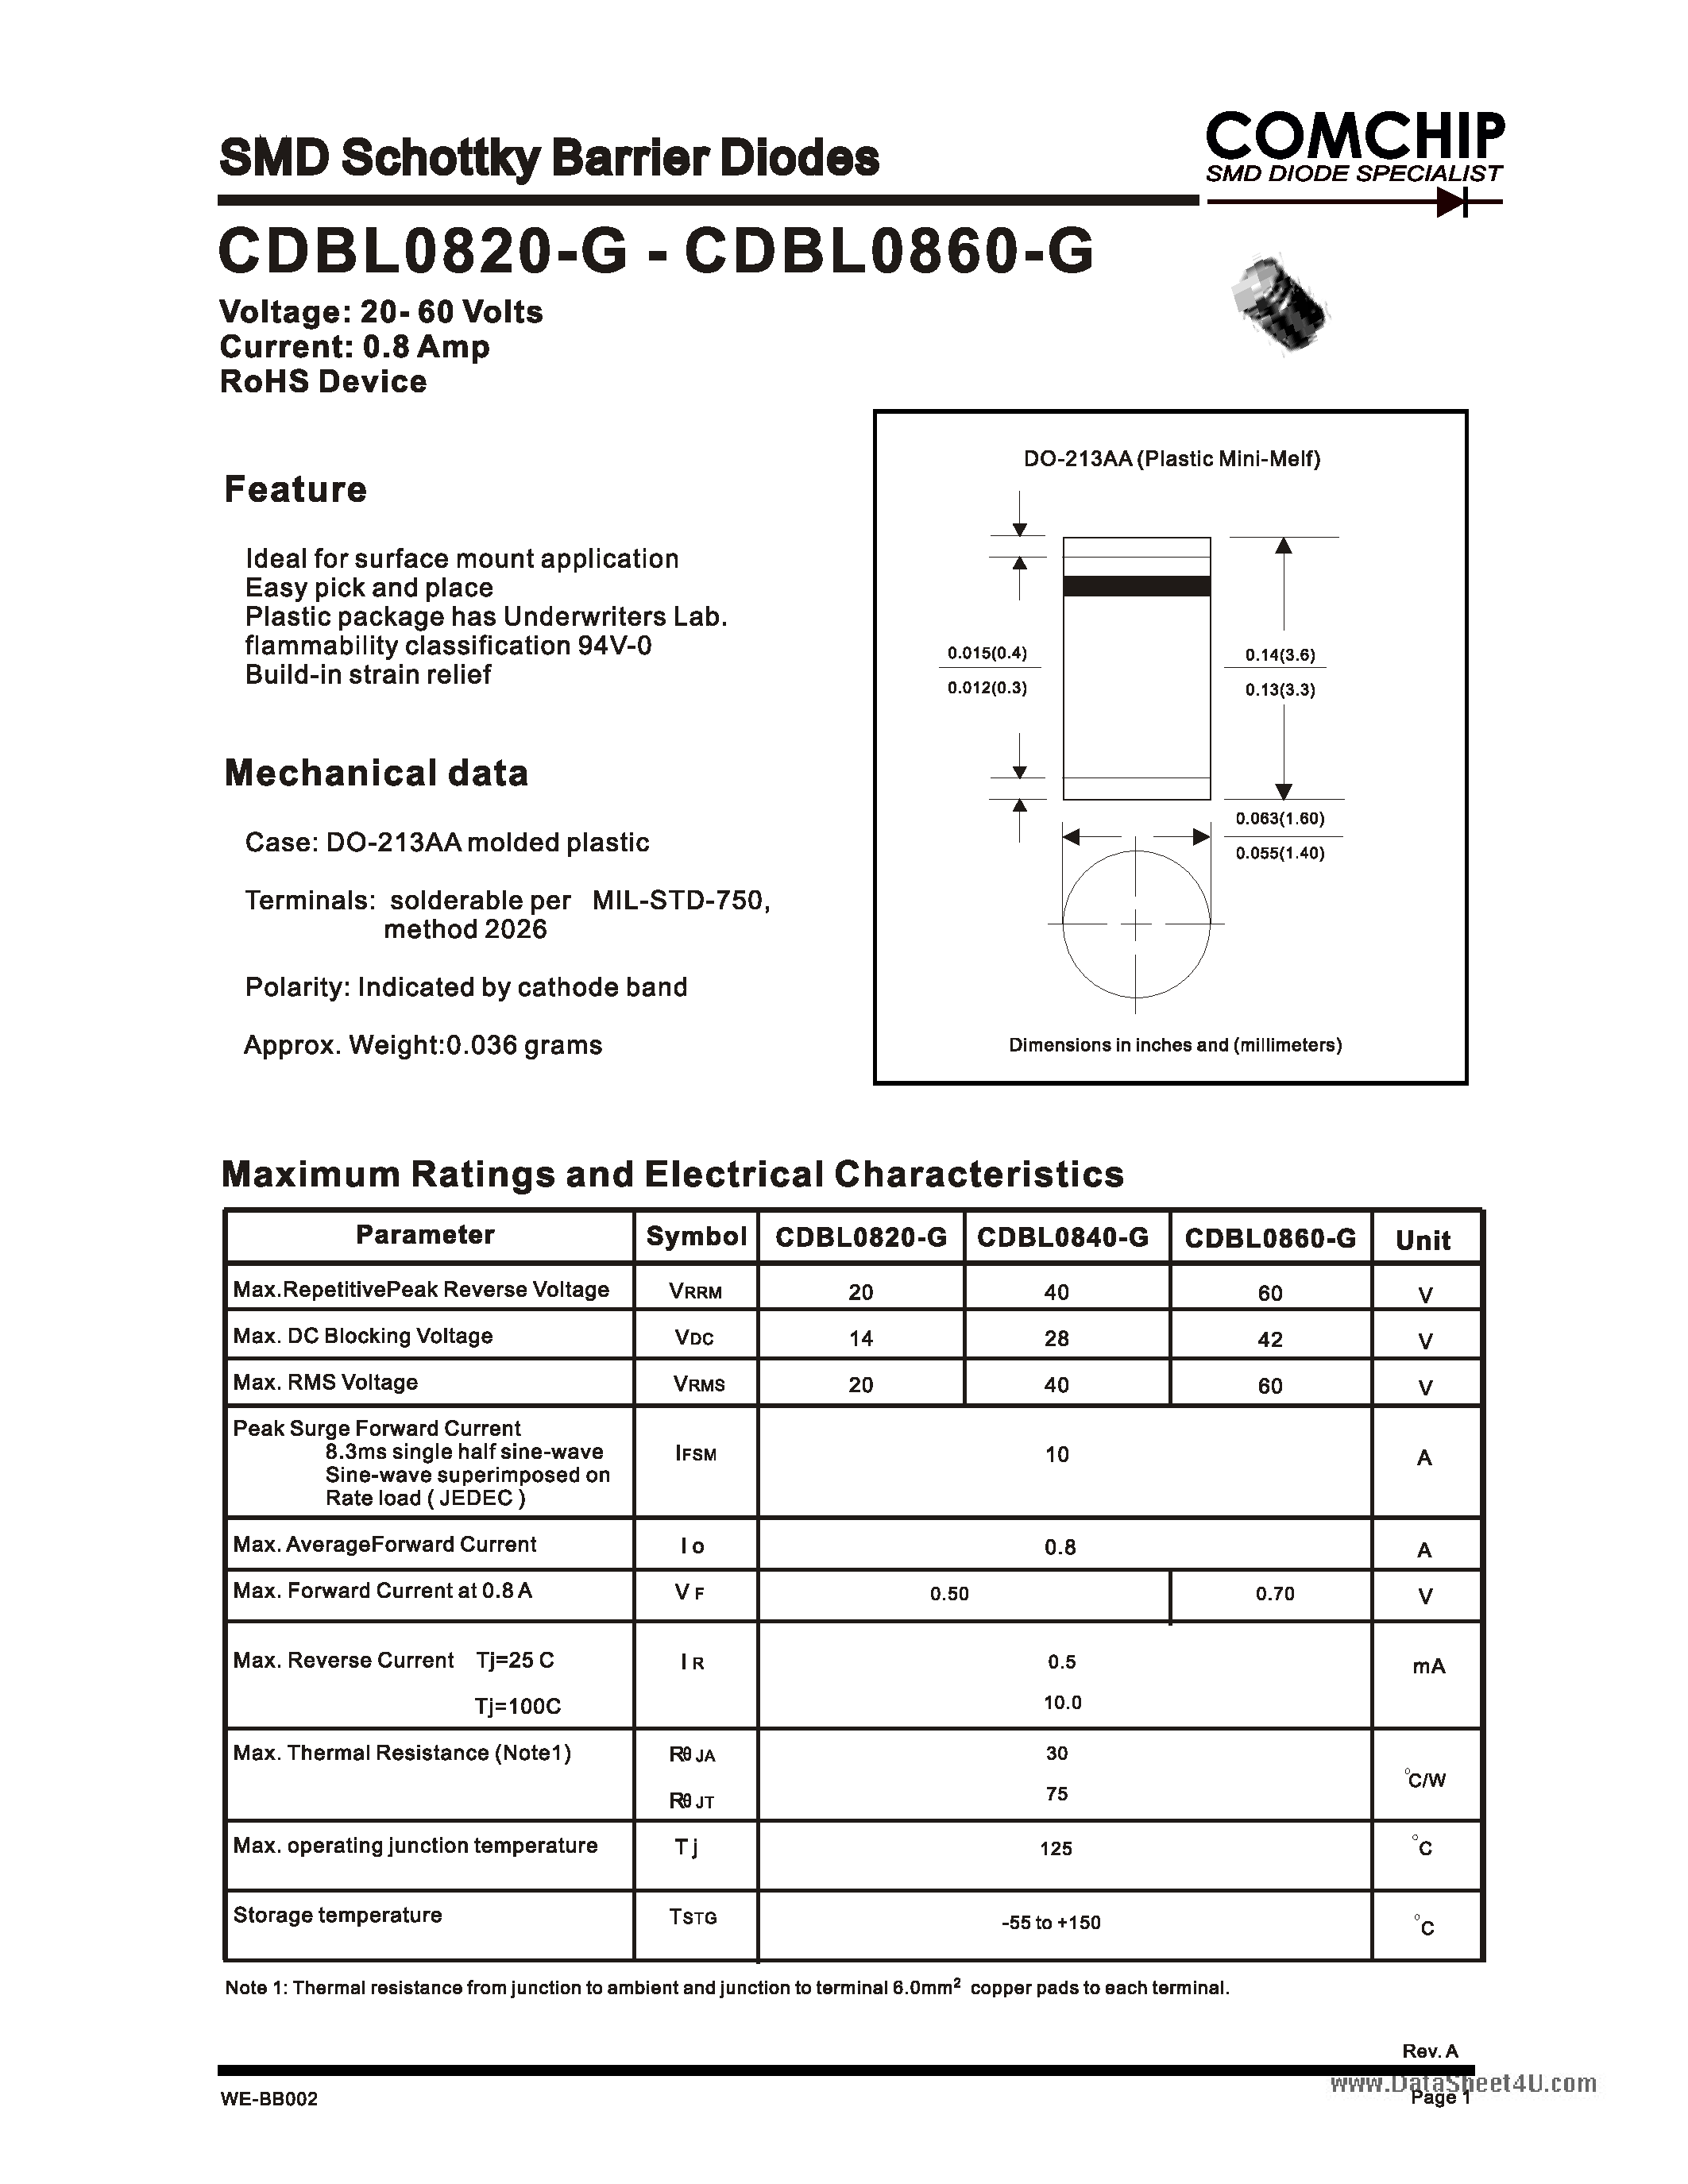 Datasheet CDBL0820-G - (CDBL0820-G - CDBL0860-G) SMD Schottky Barrier Diode page 1